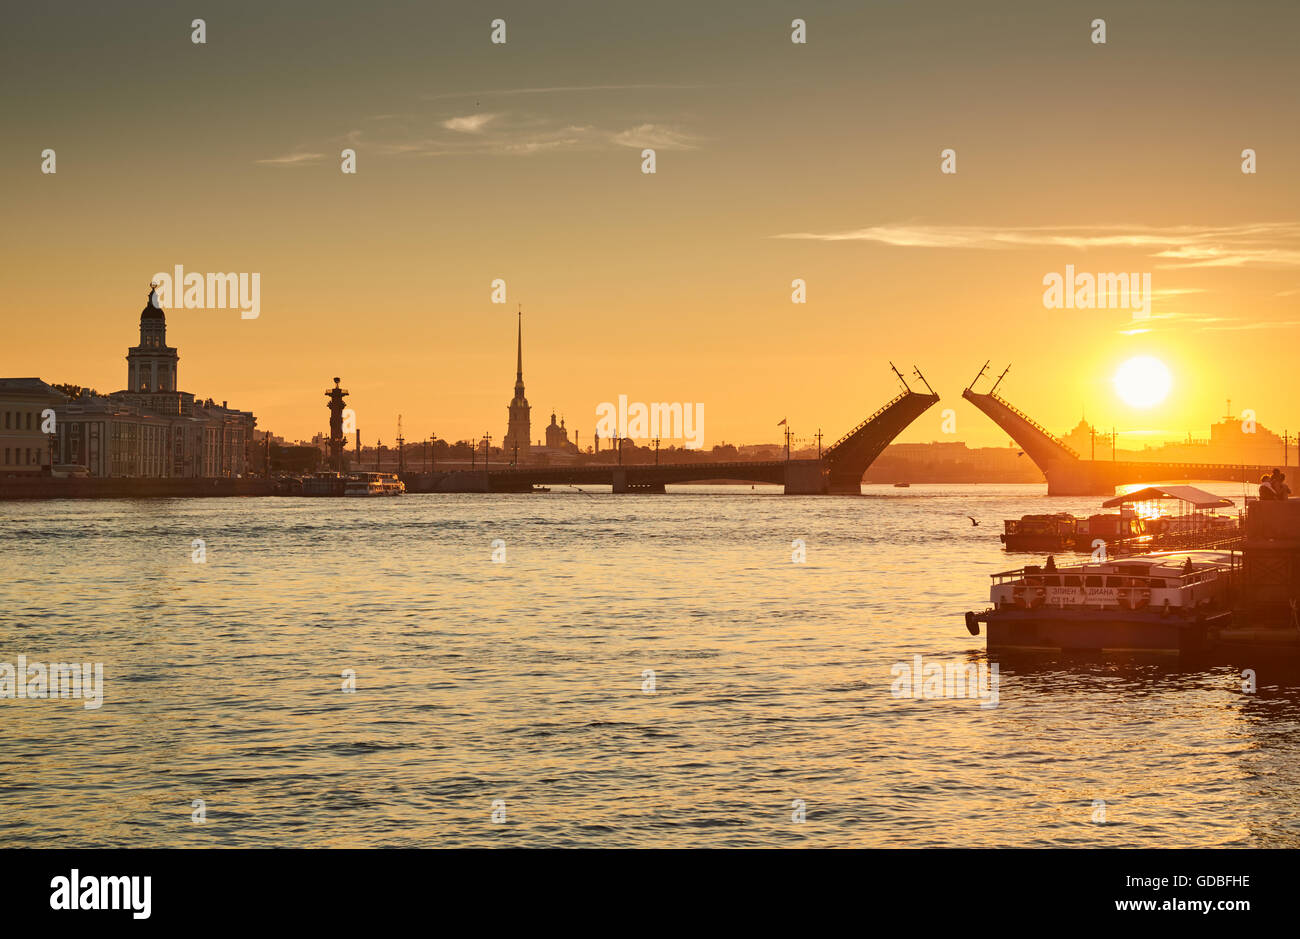 La Russie, Saint-Petersbourg, 03 juillet 2016 : Fermeture du Palace Bridge au lever du soleil, la forteresse Pierre et Paul Spike dans le ciel orange Banque D'Images